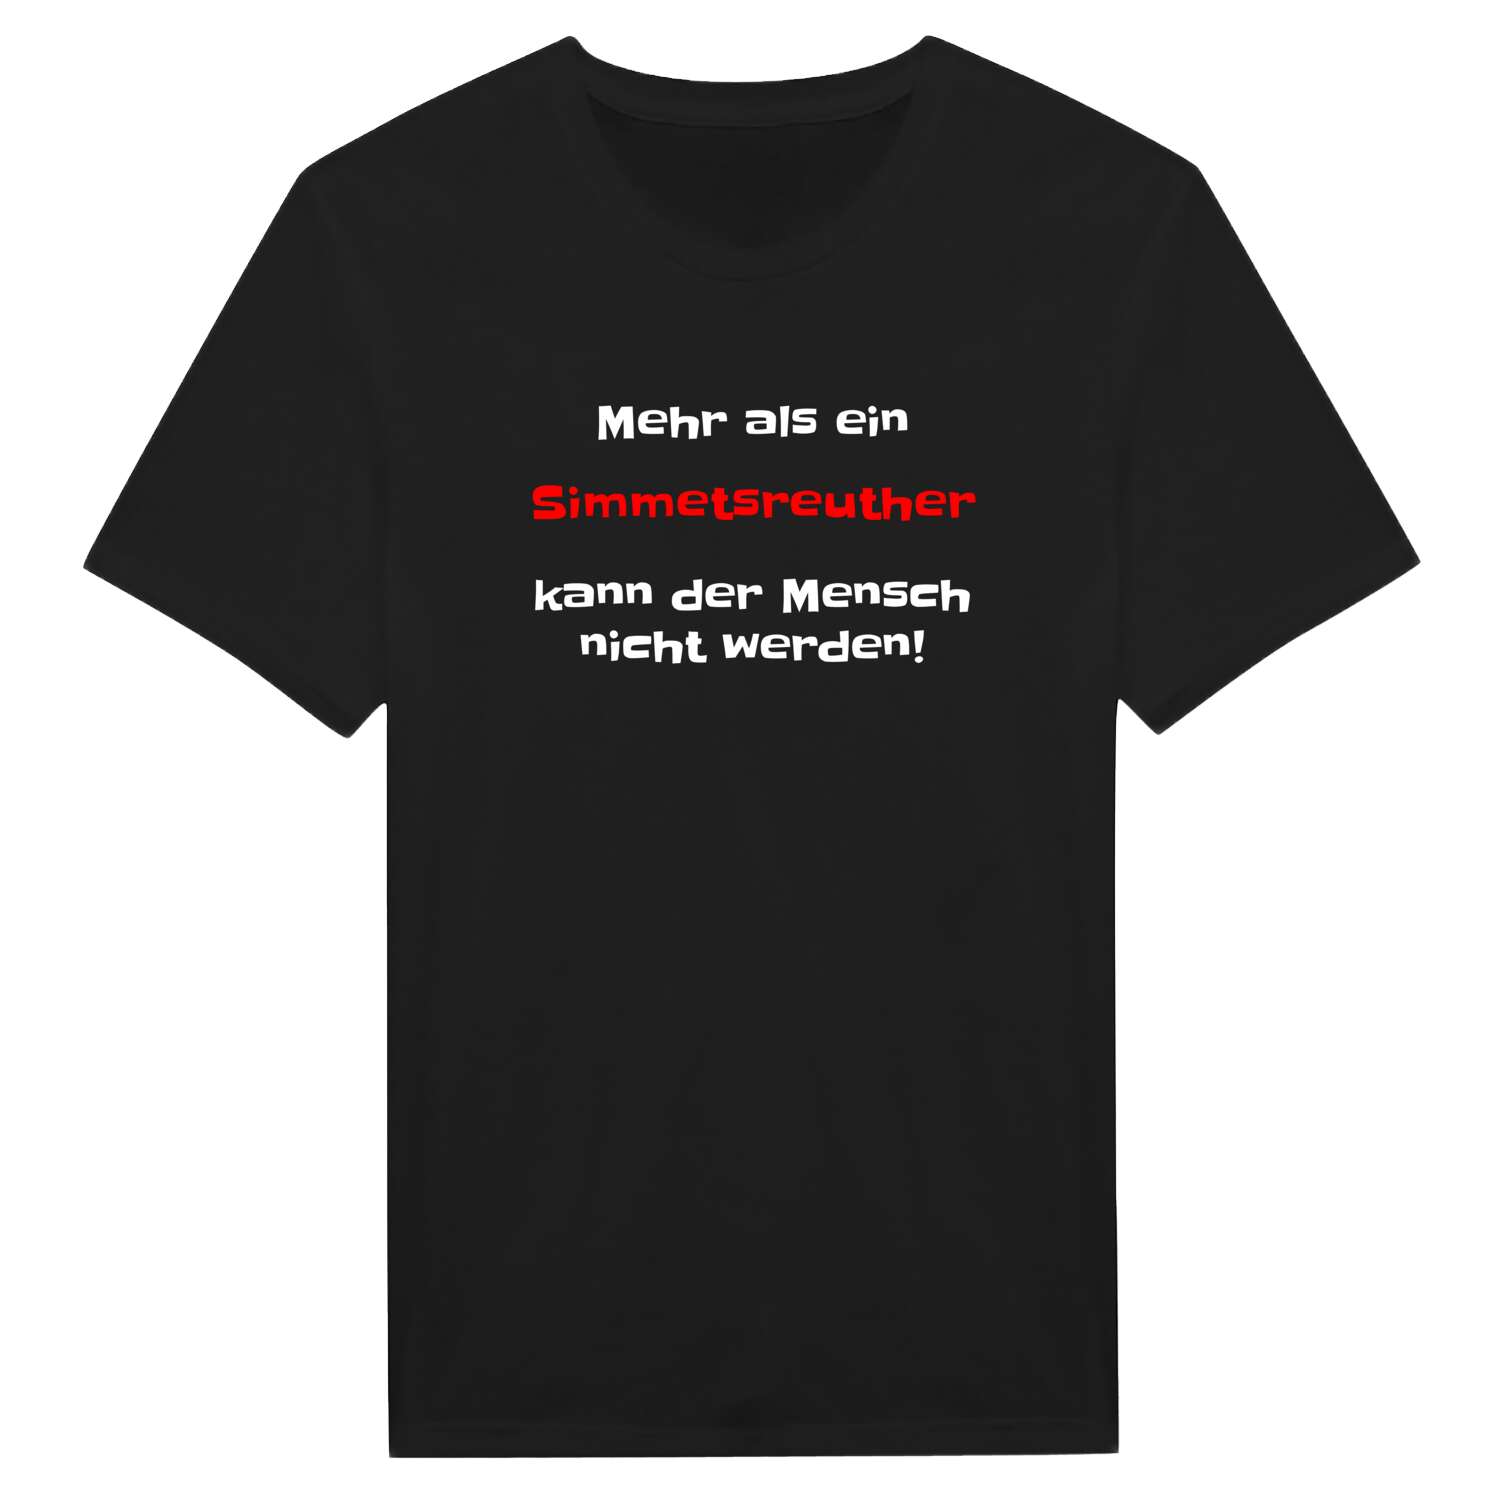 Simmetsreuth T-Shirt »Mehr als ein«